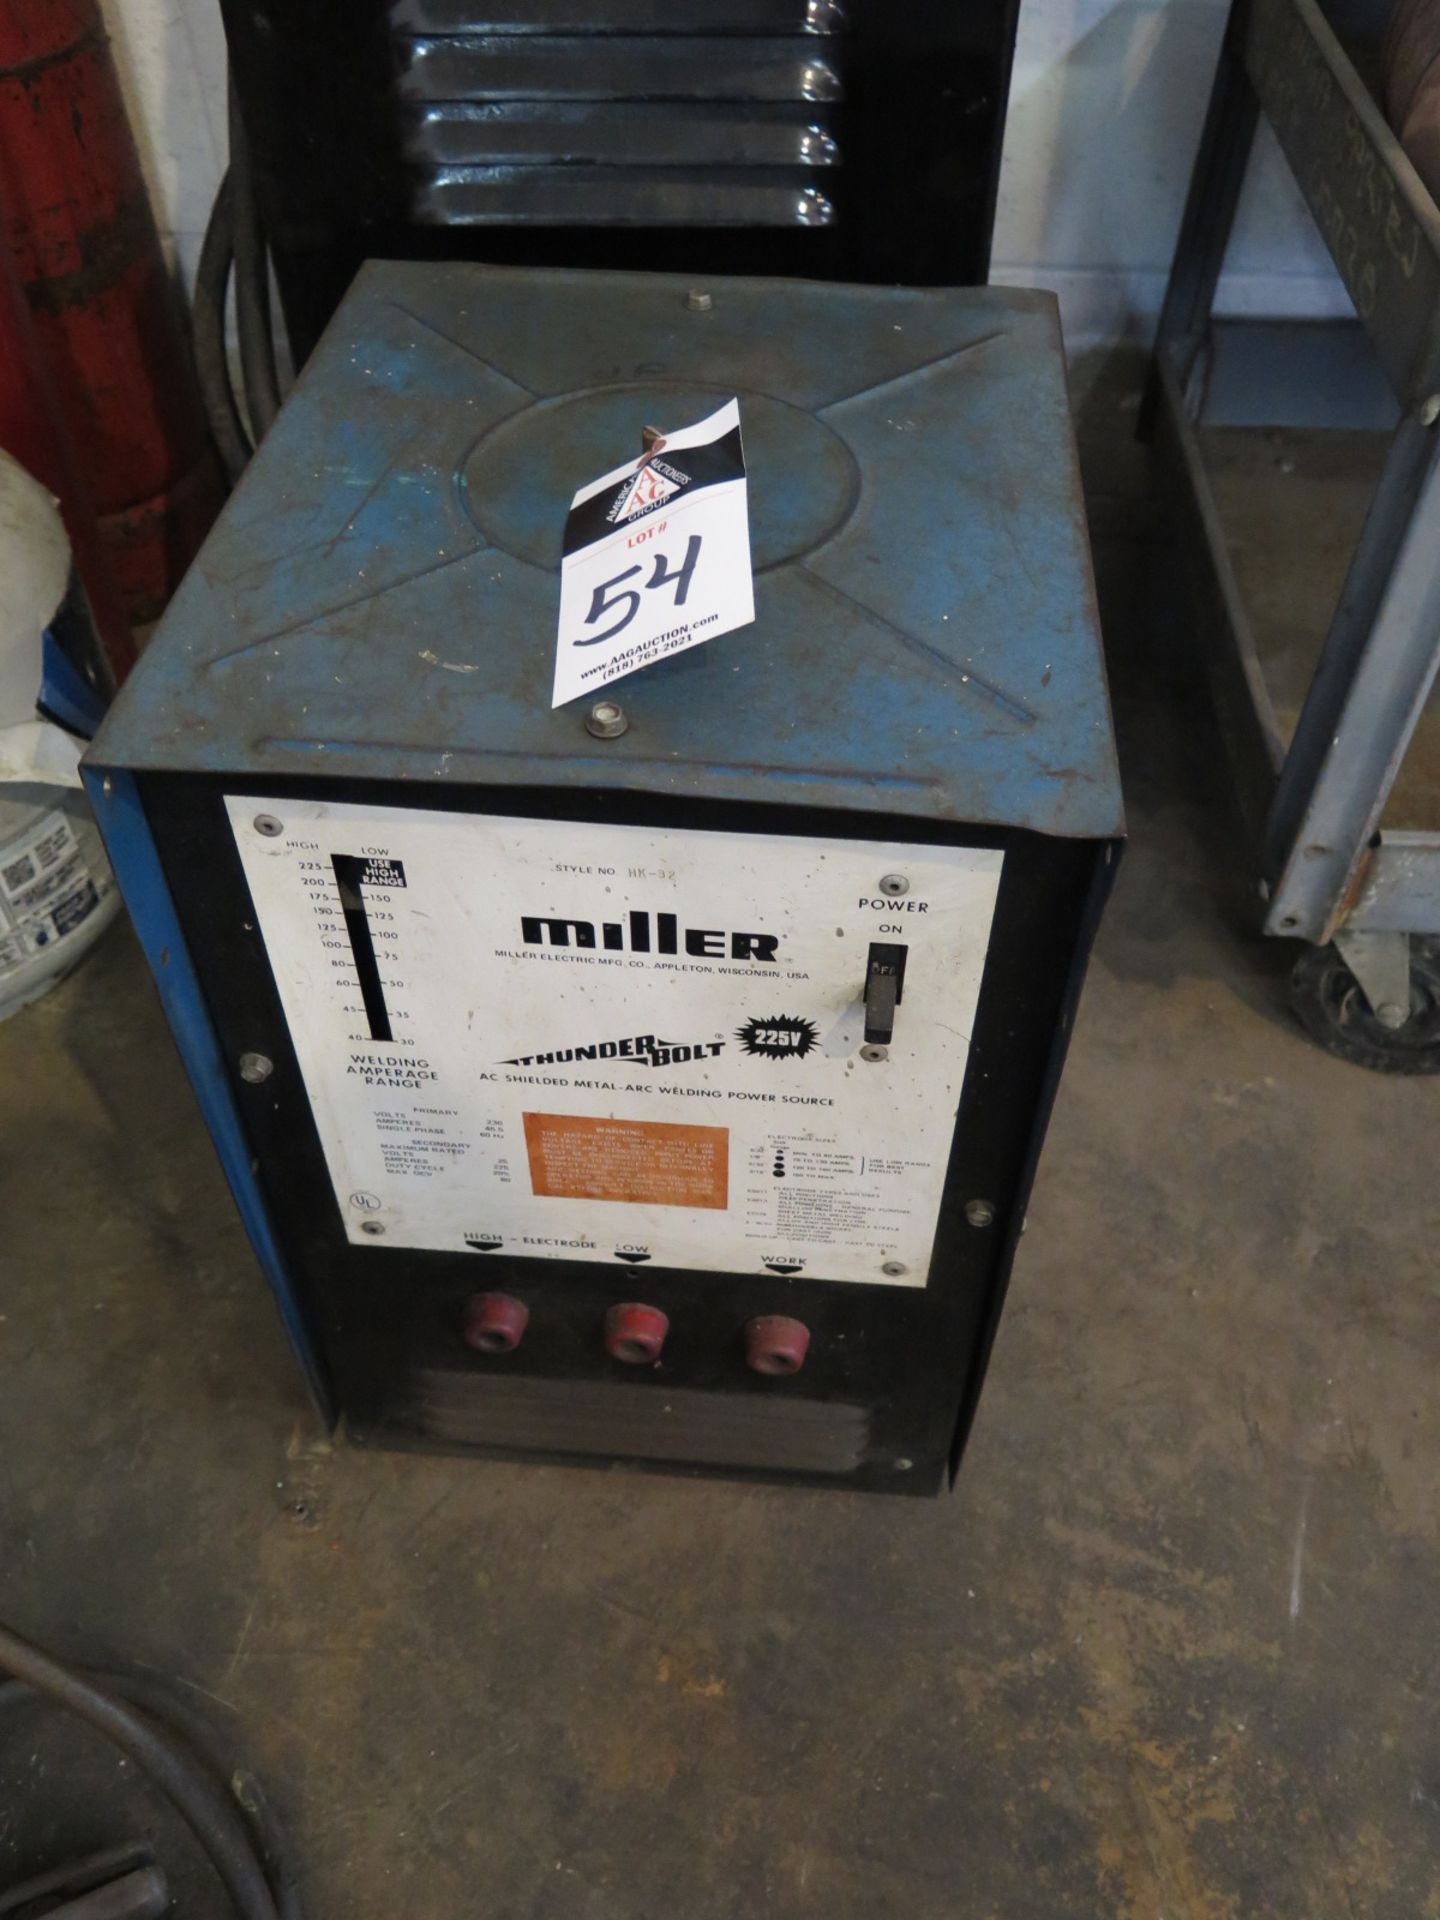 Miller Thunderbolt 225V Arc Welding Power Source